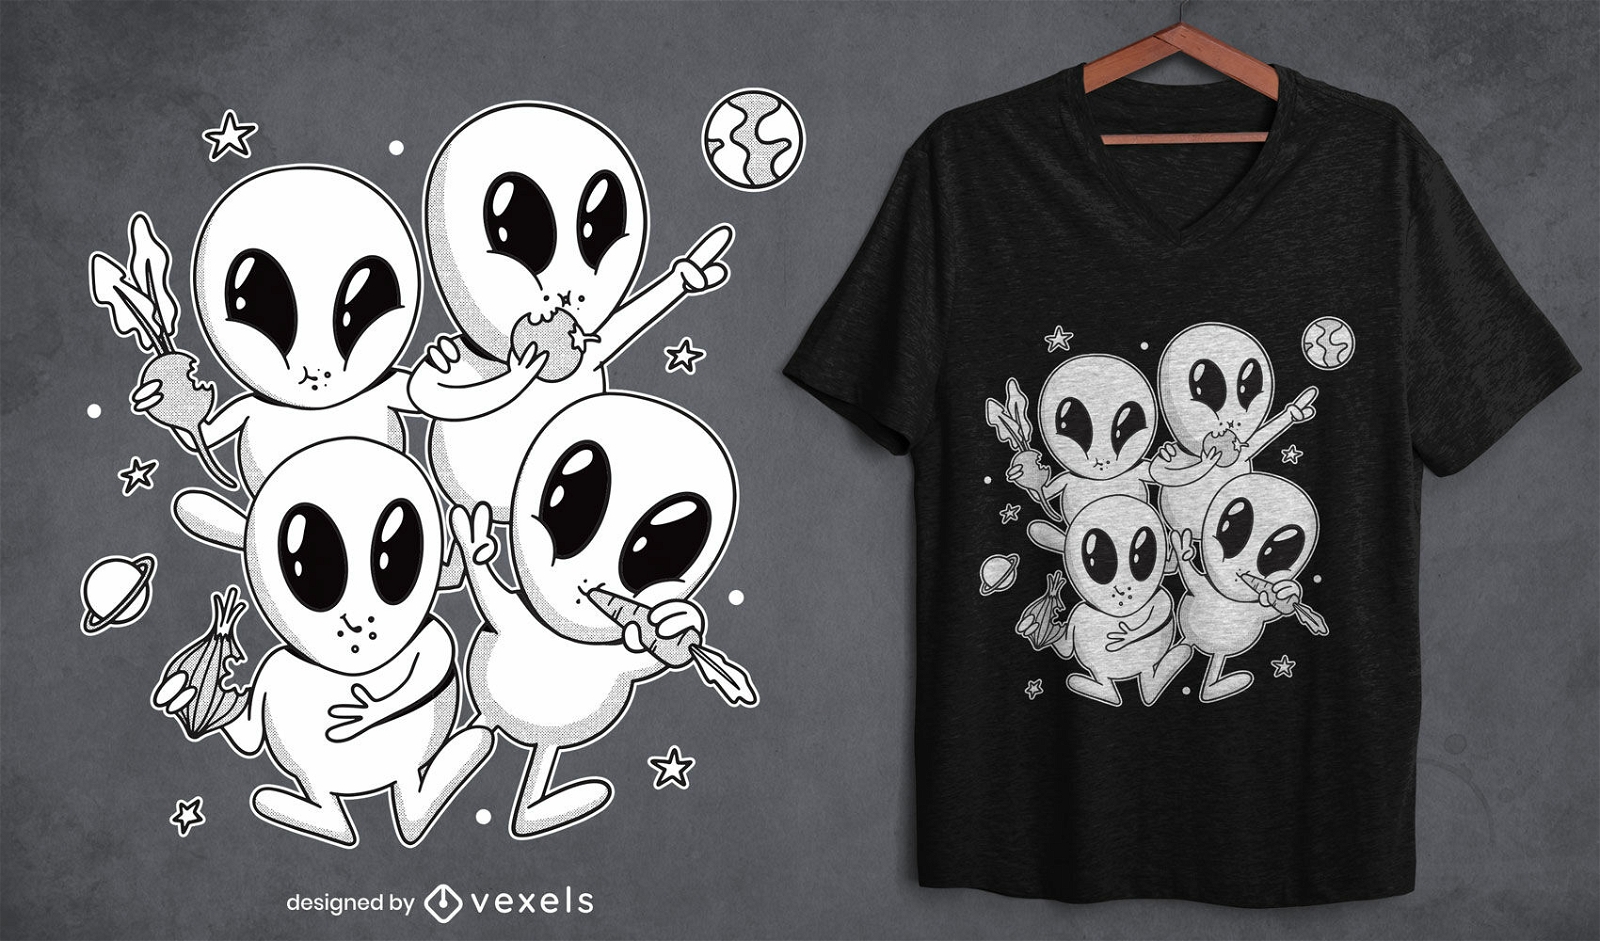 Vegetable aliens t-shirt design